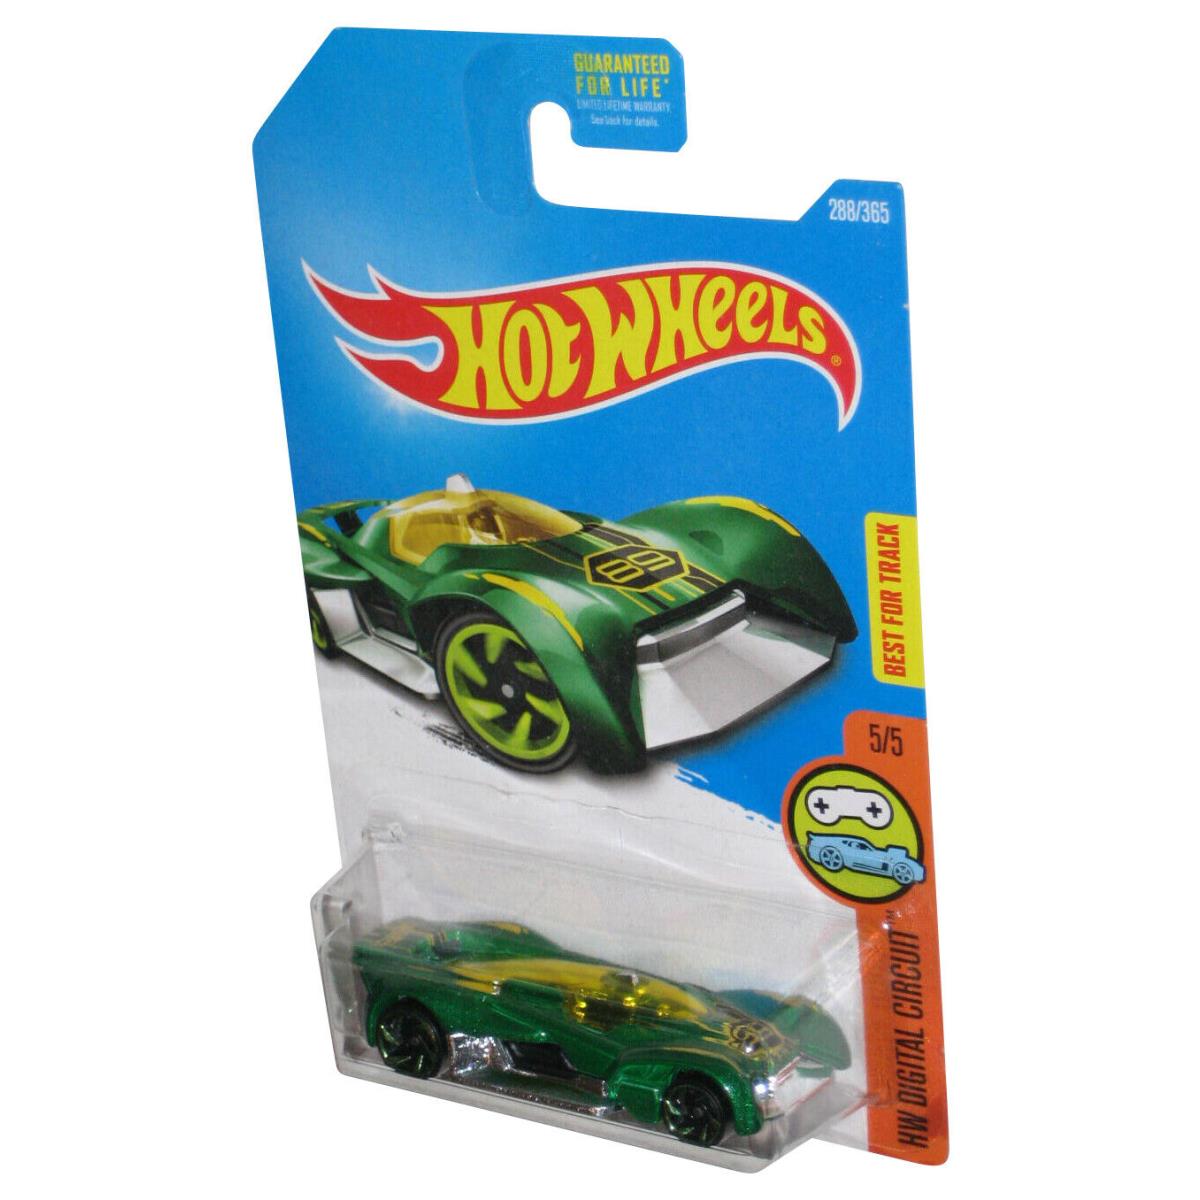 Hot Wheels HW Digital Circuit 5/5 2015 Green Futurismo Toy Car 288/365